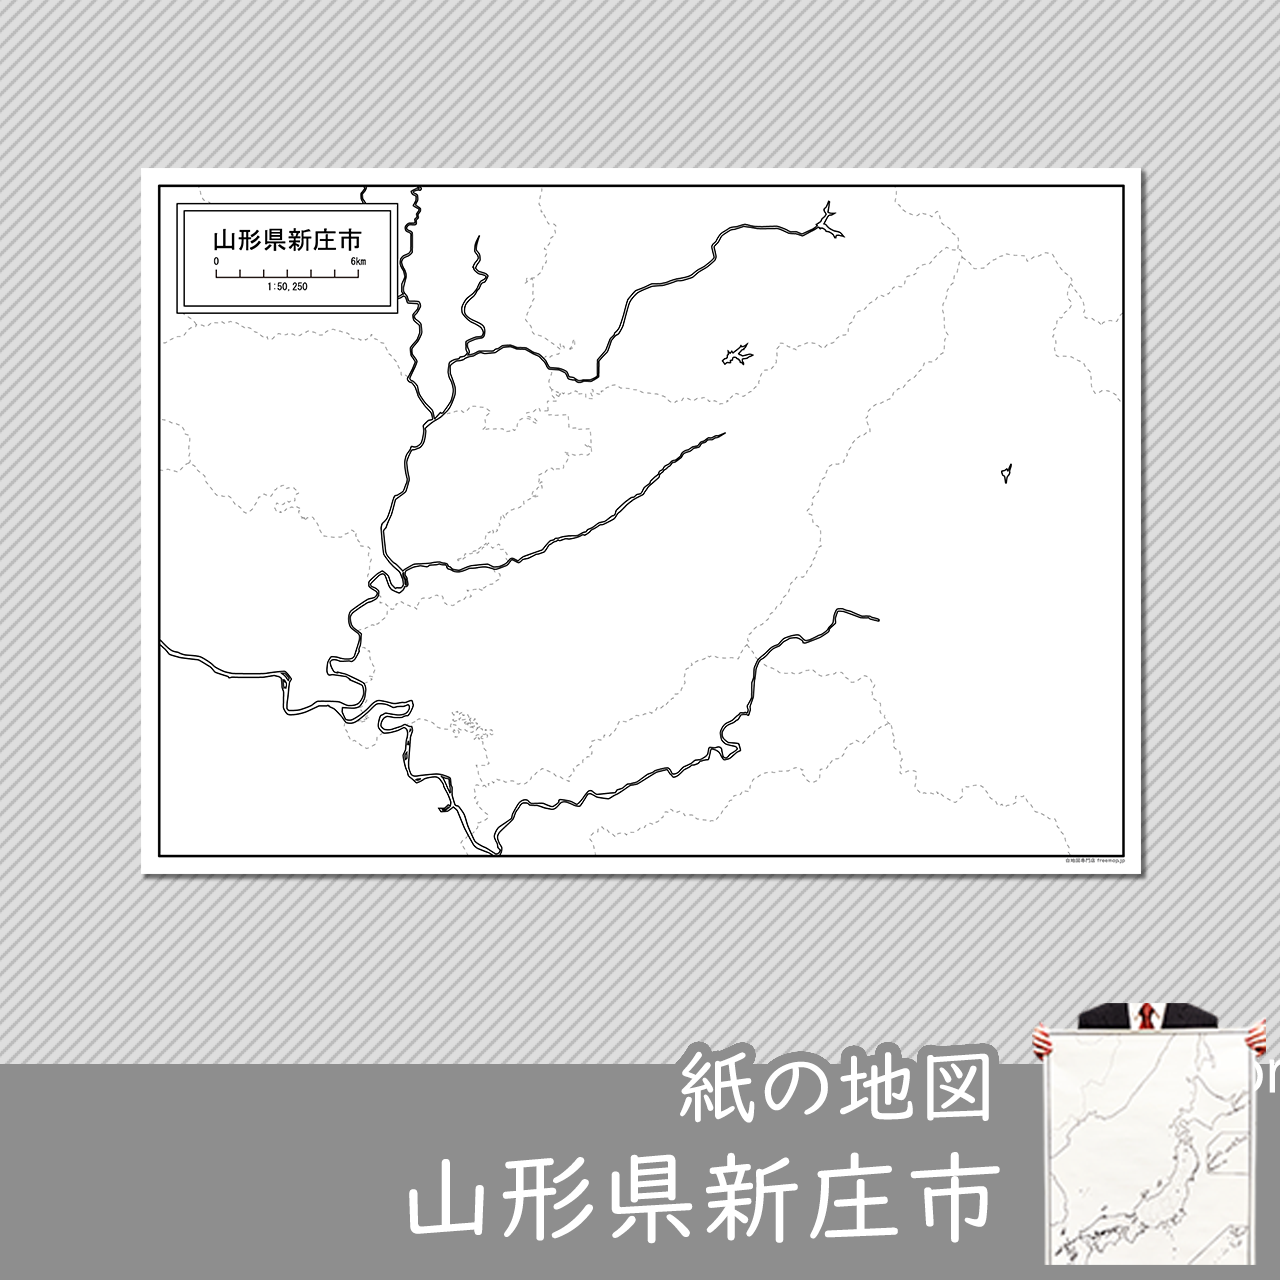 新庄市の紙の白地図のサムネイル